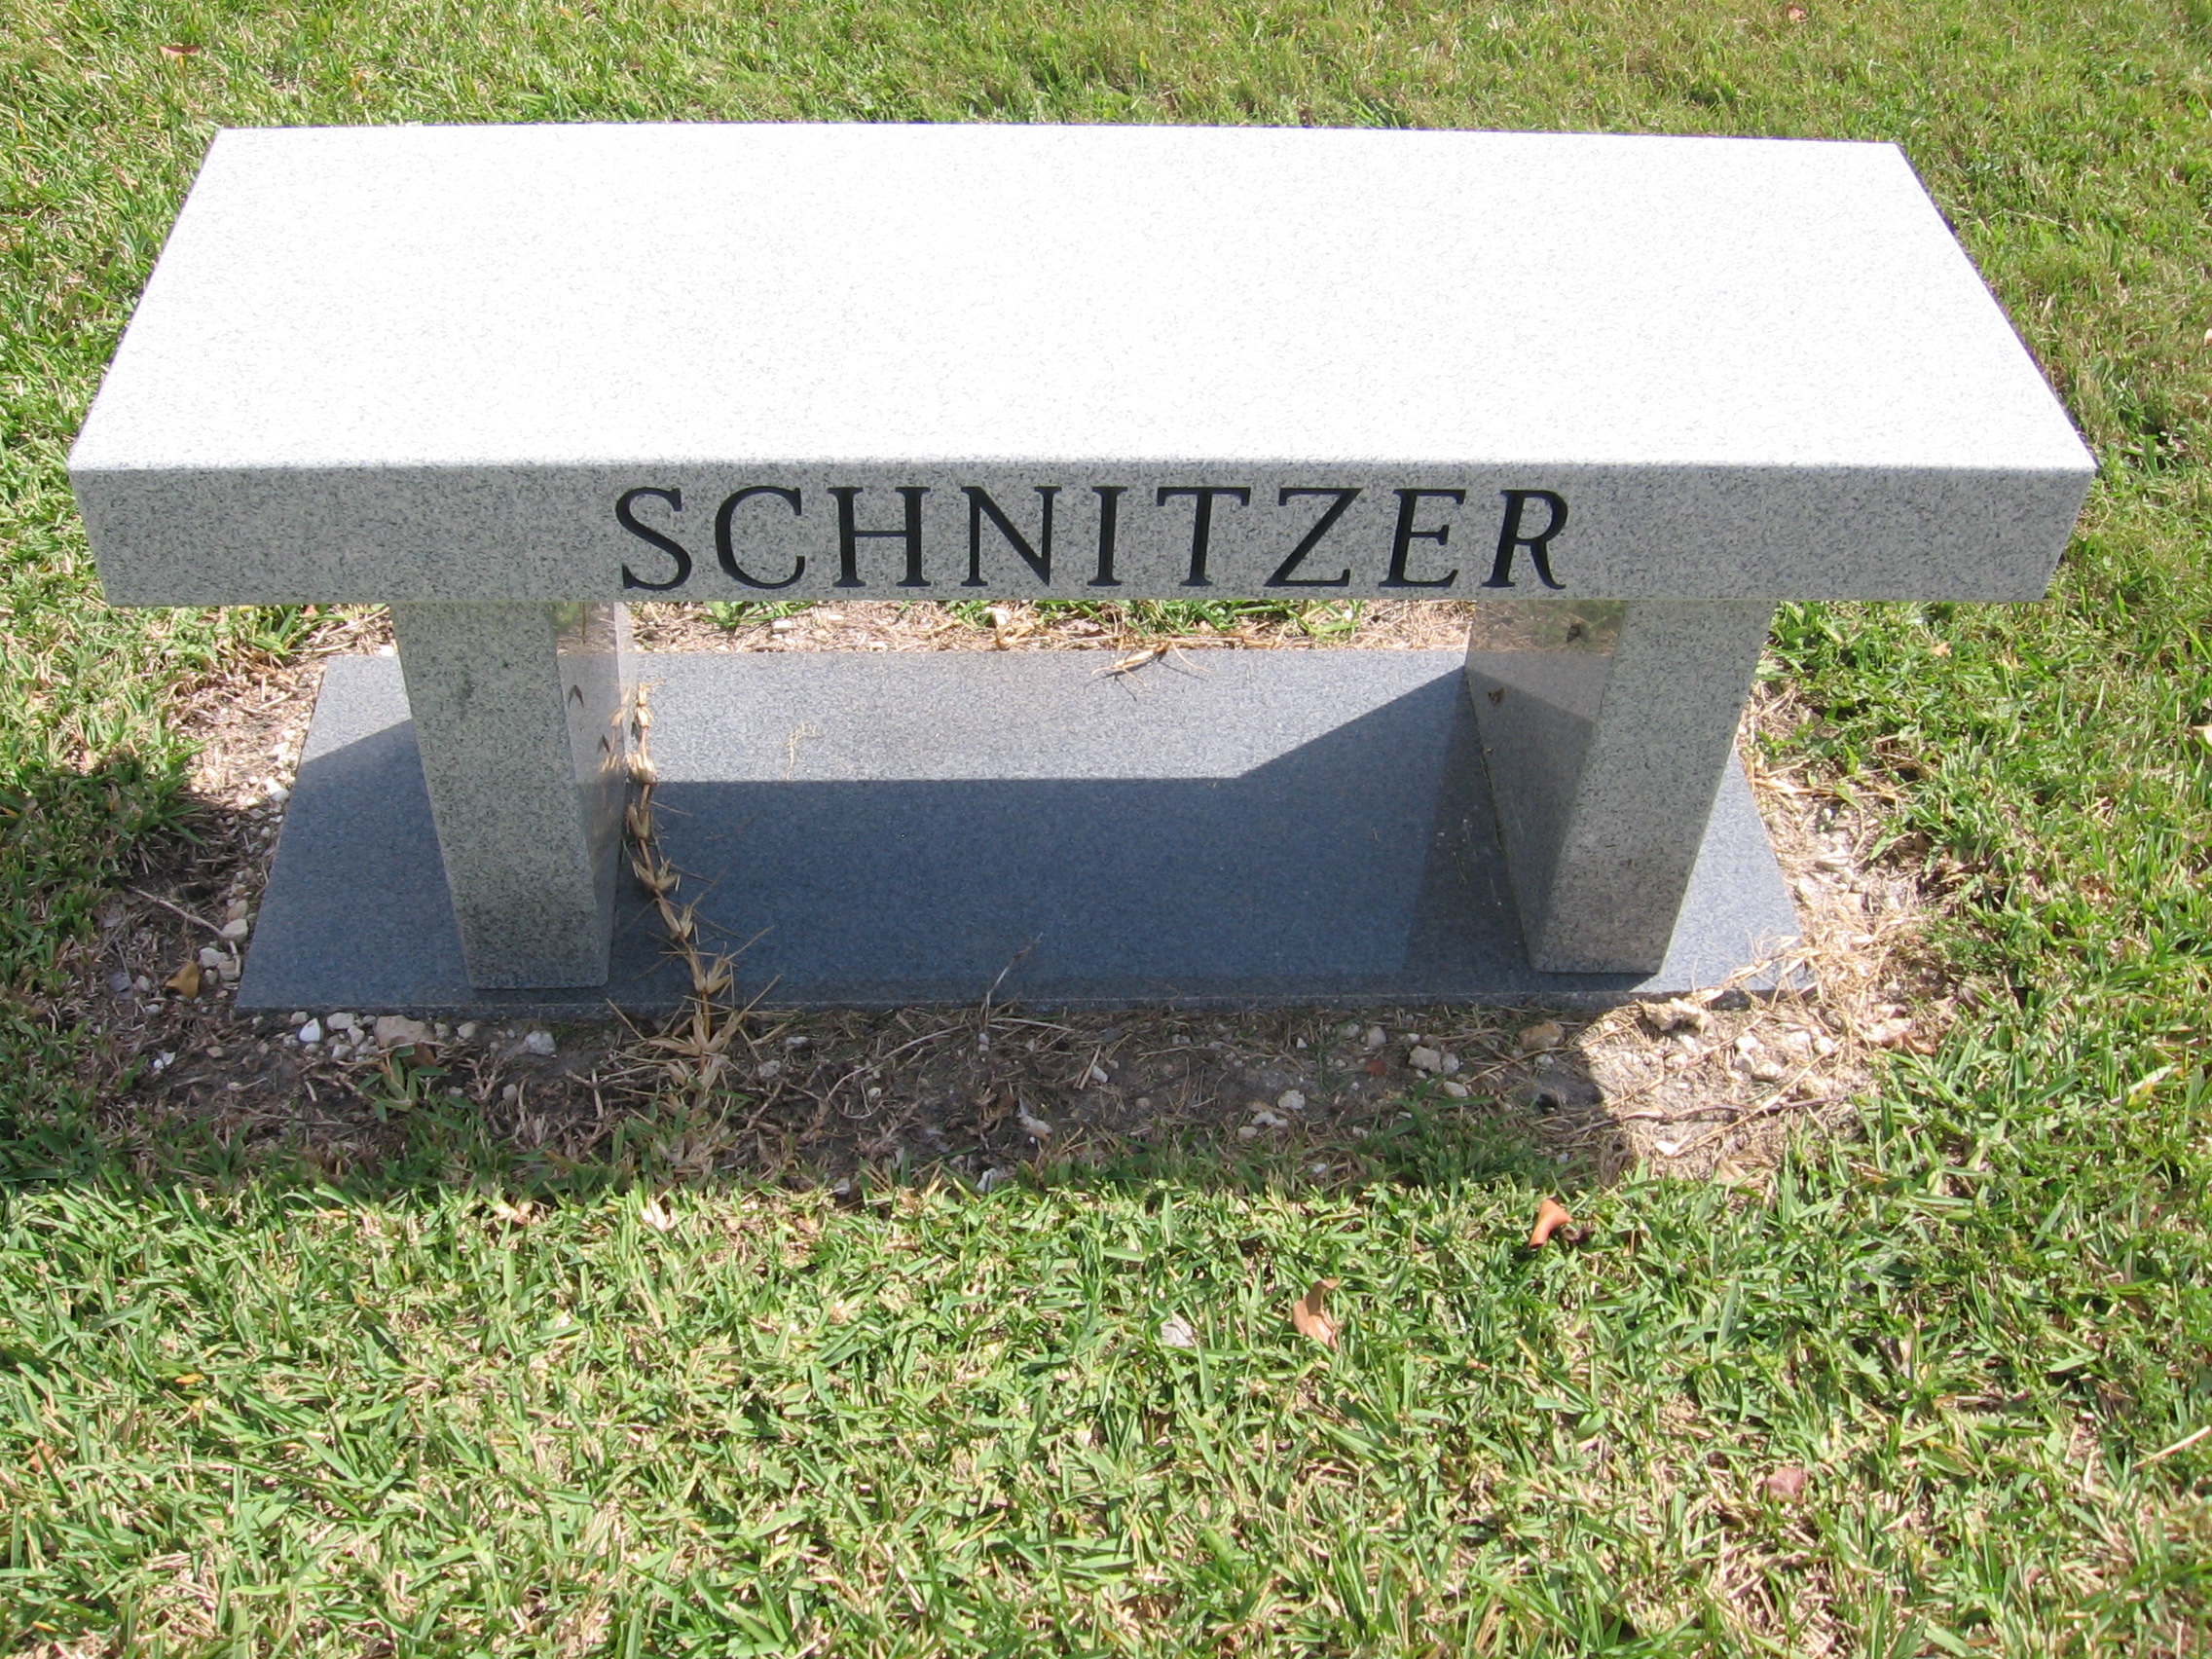 Alvin Schnitzer